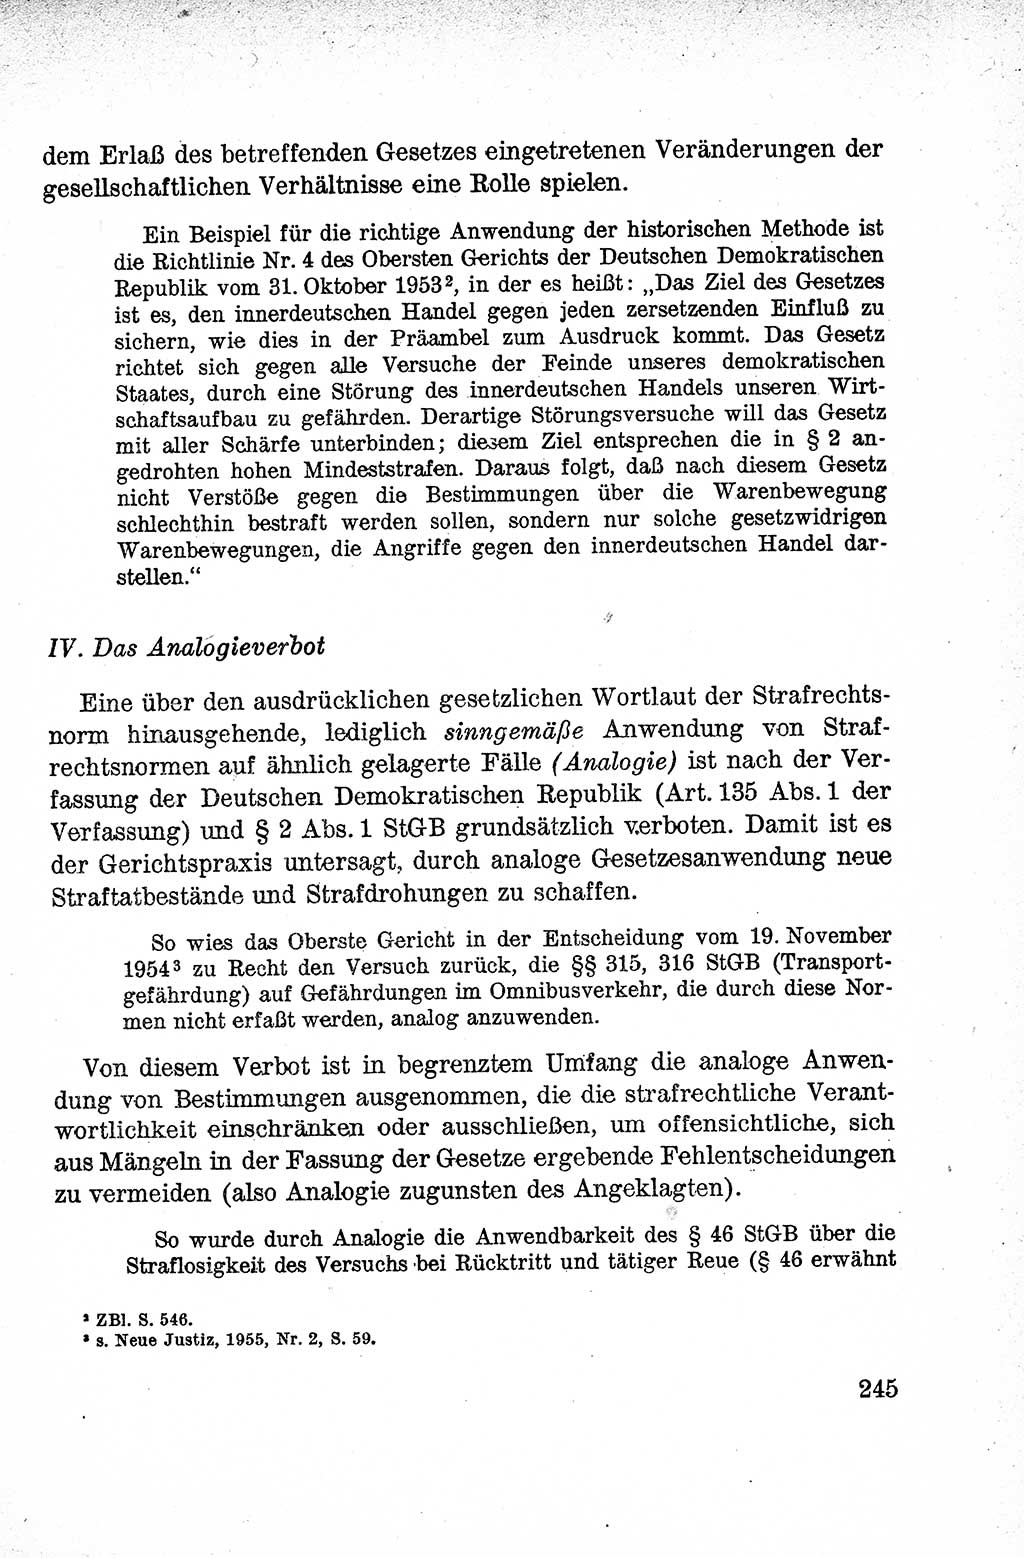 Lehrbuch des Strafrechts der Deutschen Demokratischen Republik (DDR), Allgemeiner Teil 1959, Seite 245 (Lb. Strafr. DDR AT 1959, S. 245)